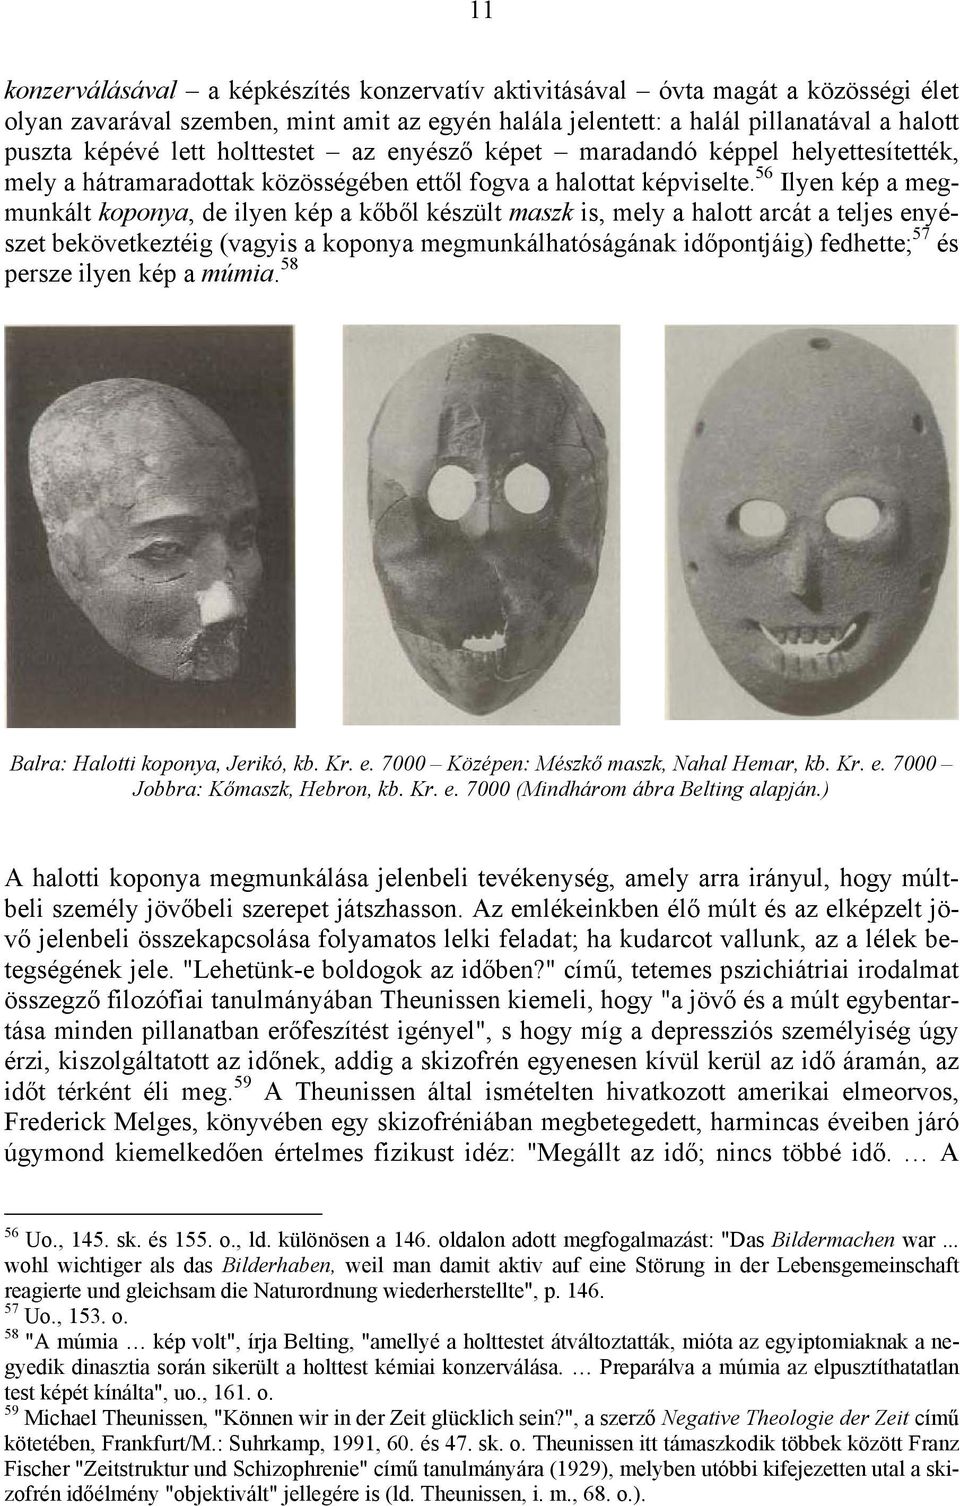 56 Ilyen kép a megmunkált koponya, de ilyen kép a kőből készült maszk is, mely a halott arcát a teljes enyészet bekövetkeztéig (vagyis a koponya megmunkálhatóságának időpontjáig) fedhette; 57 és